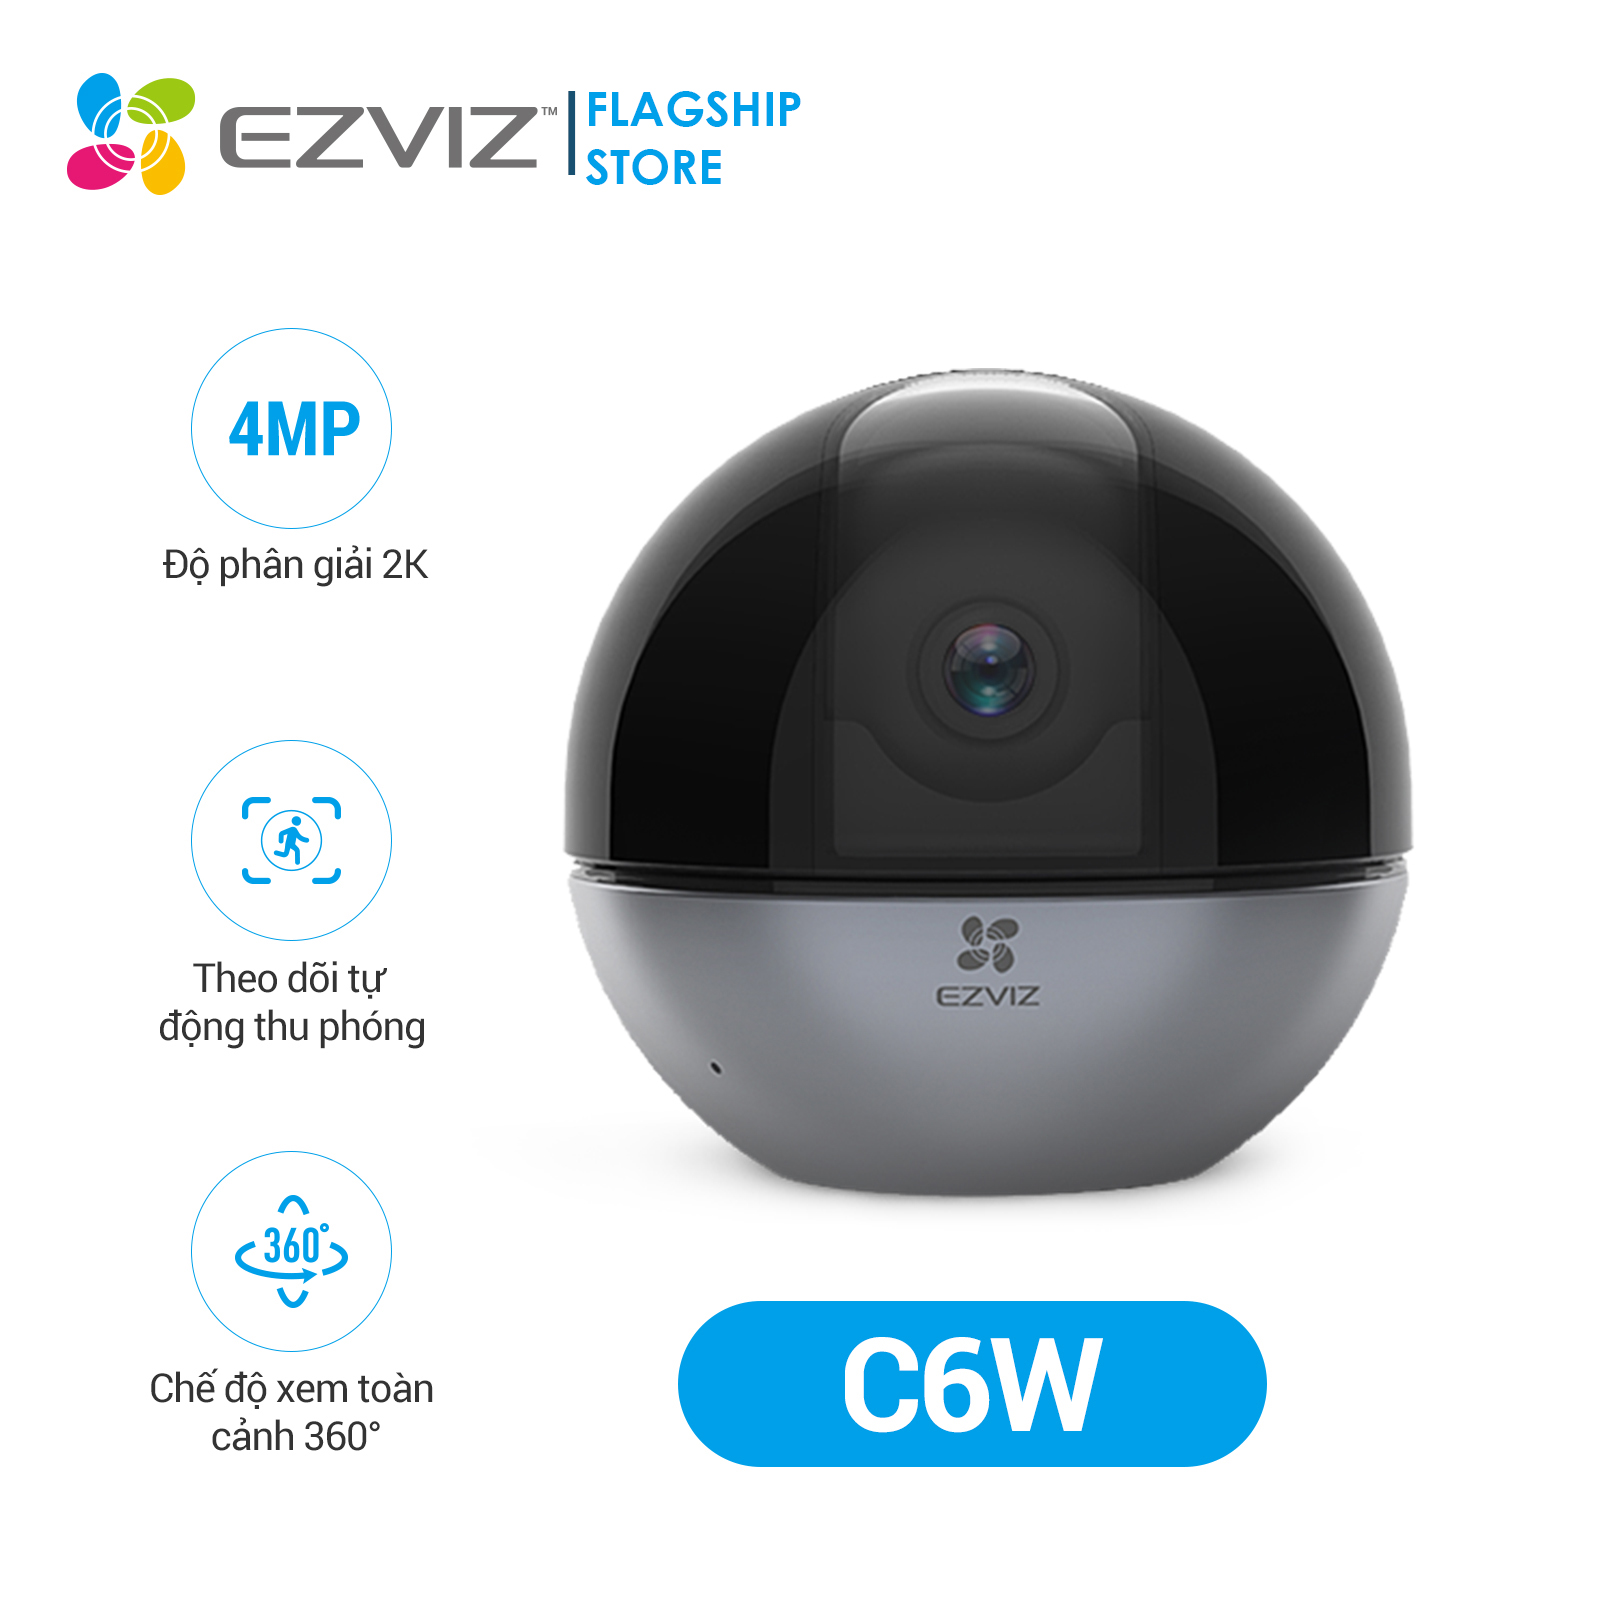 Combo Camera Wi-fi Trong Nhà EZVIZ C6W 4MP Kèm Thẻ Nhớ  32GB/64GB - Hàng Chính Hãng